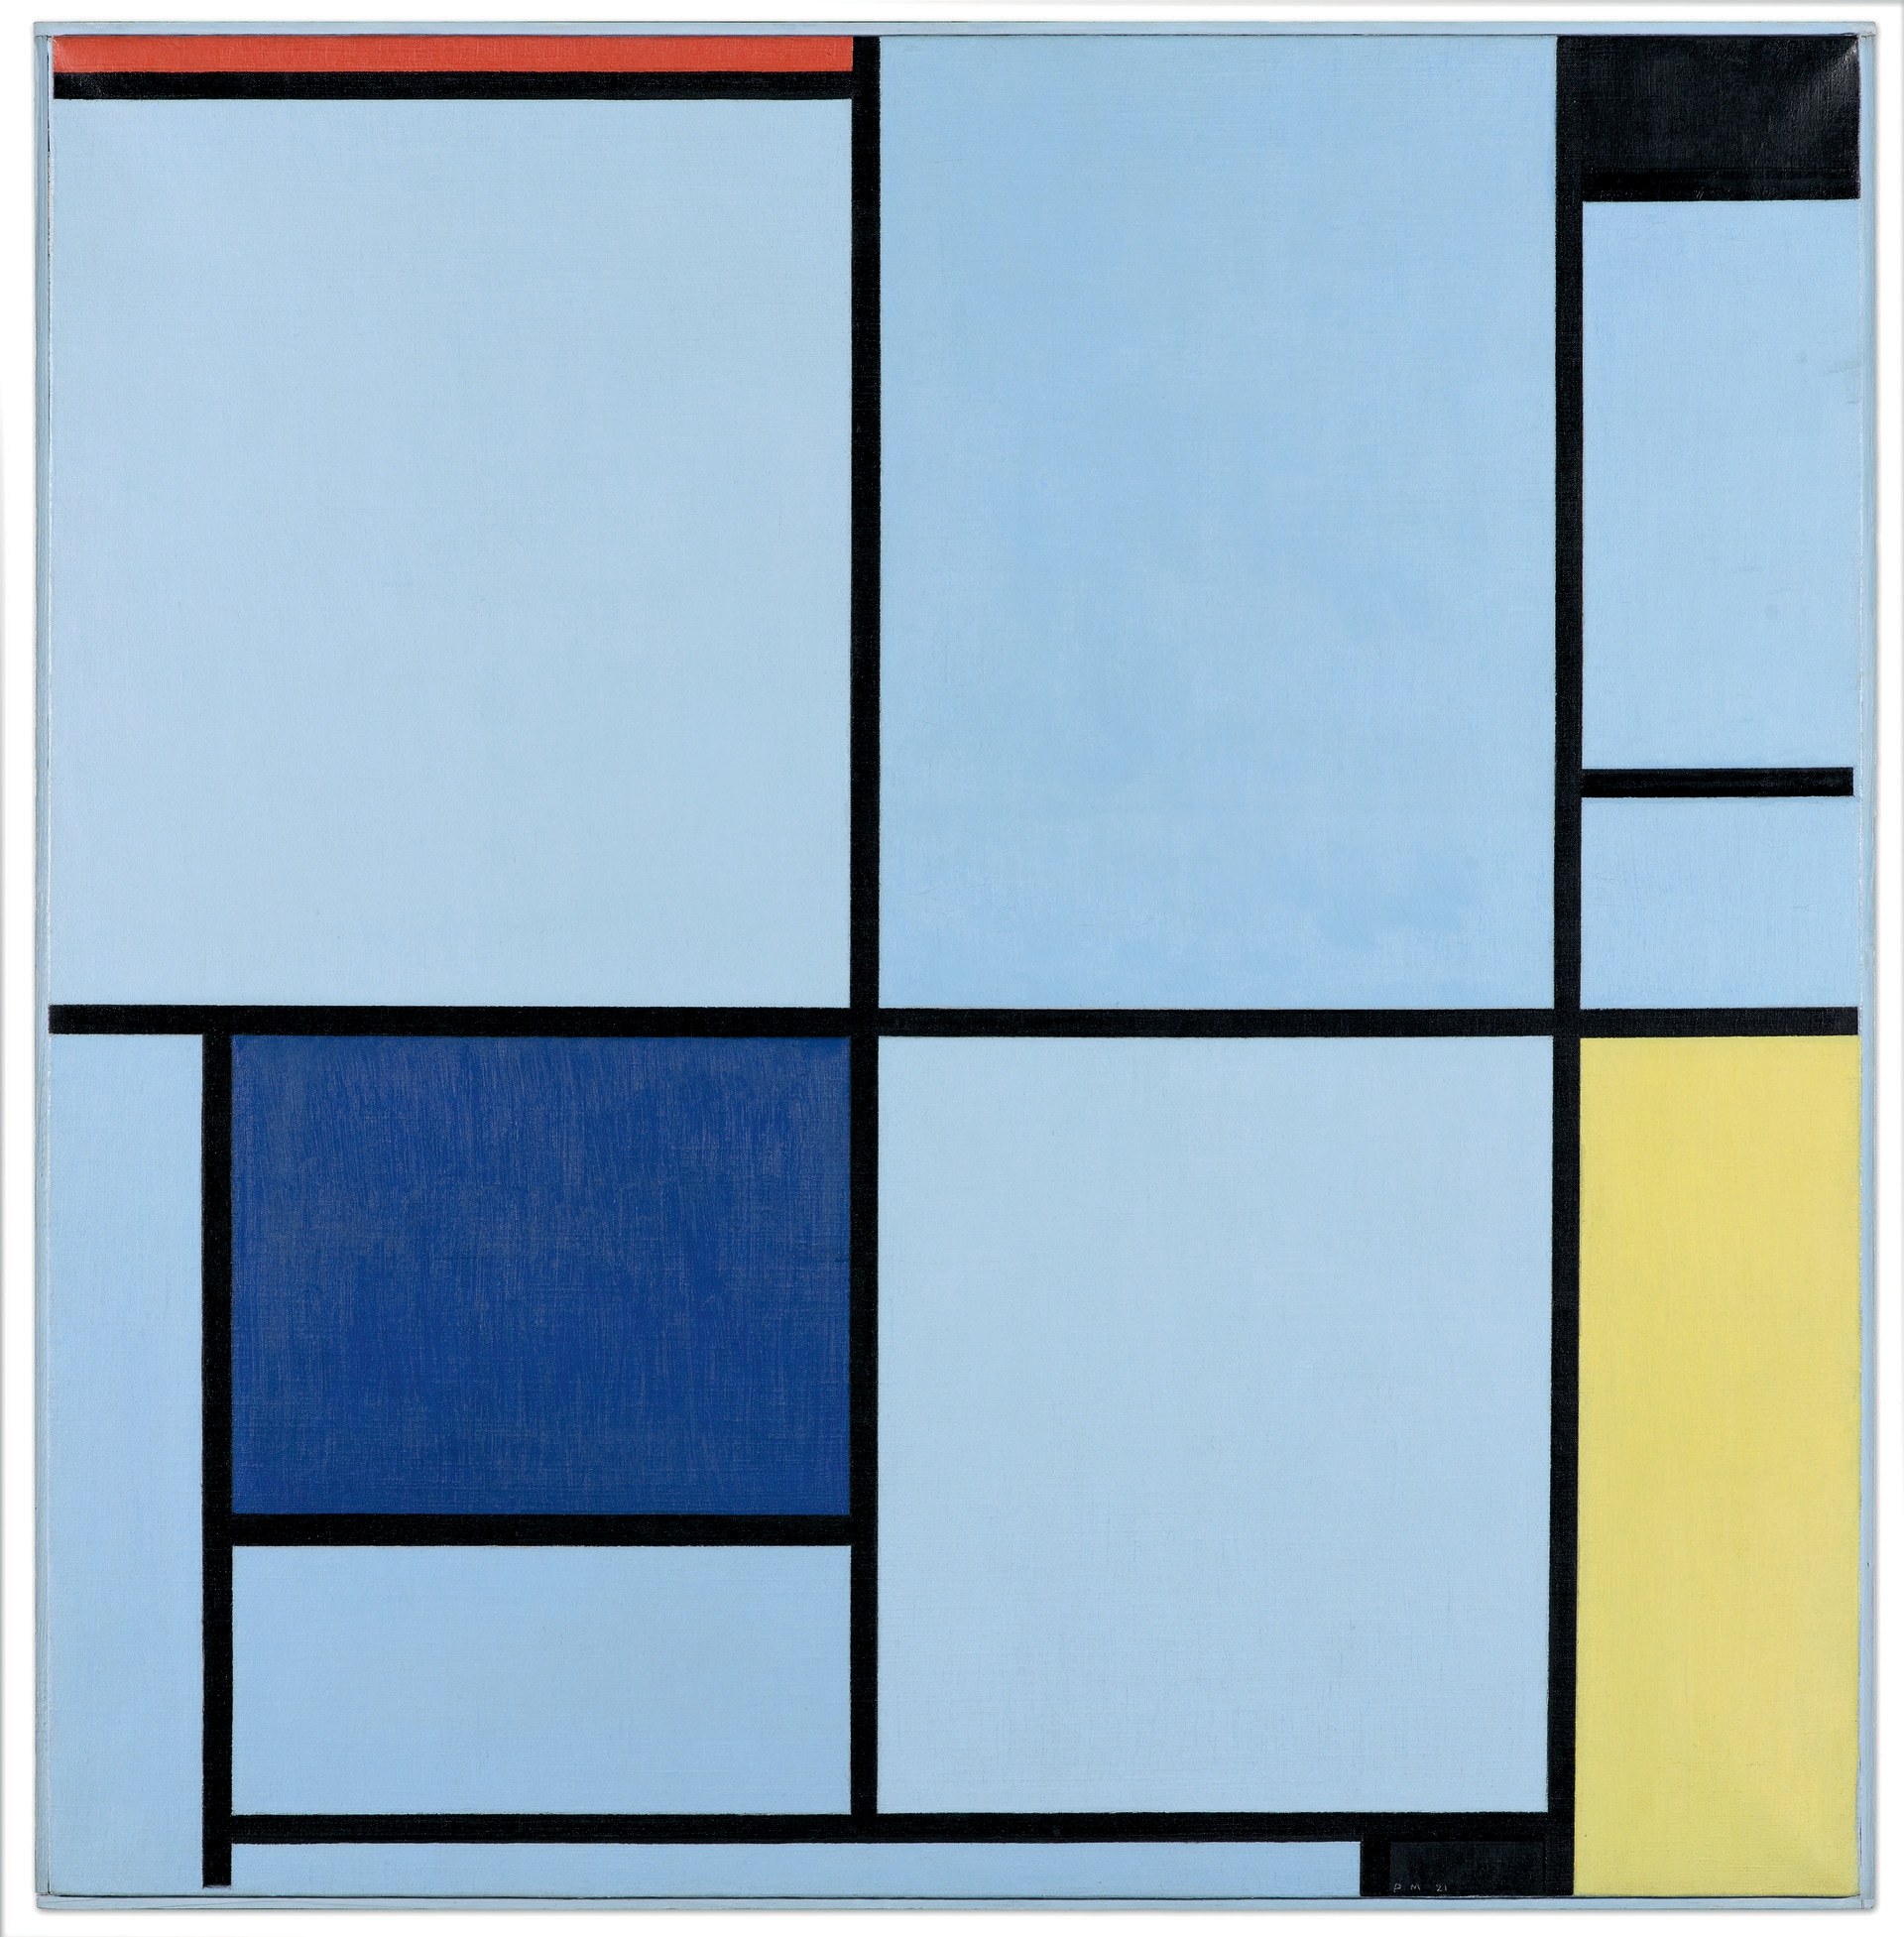 Piet Mondrian (1872-1944): Composizione con rosso, giallo e blu, 1921. Olio su tela. Kunstmuseum Den Haag